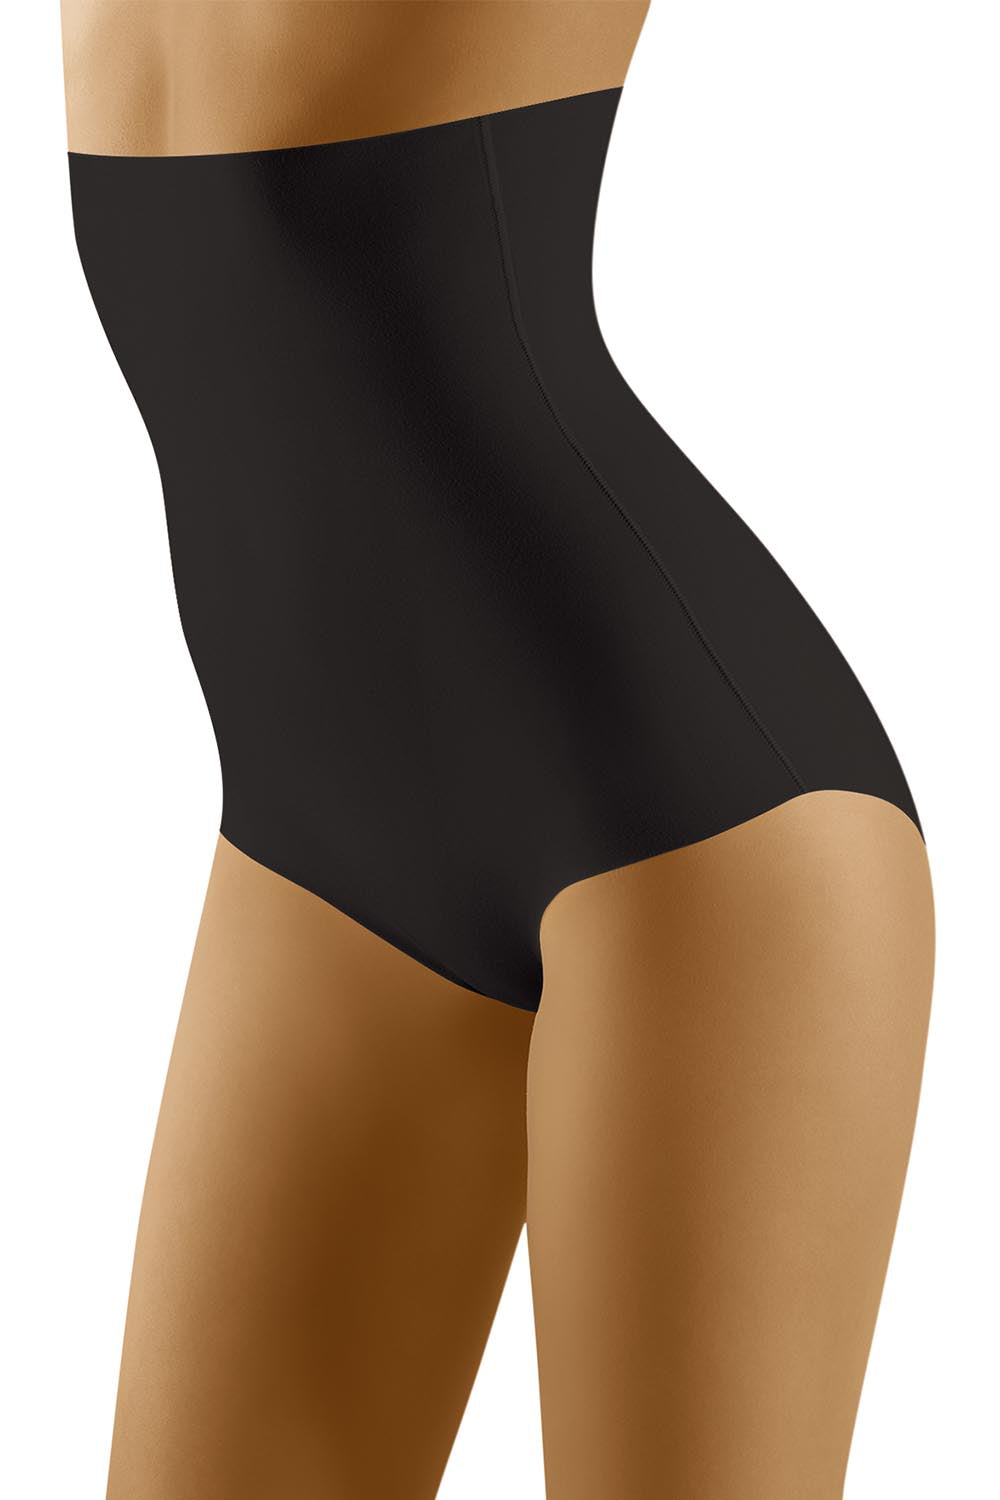 Culotte Noire Modelante à Taille Haute: Indispensable!